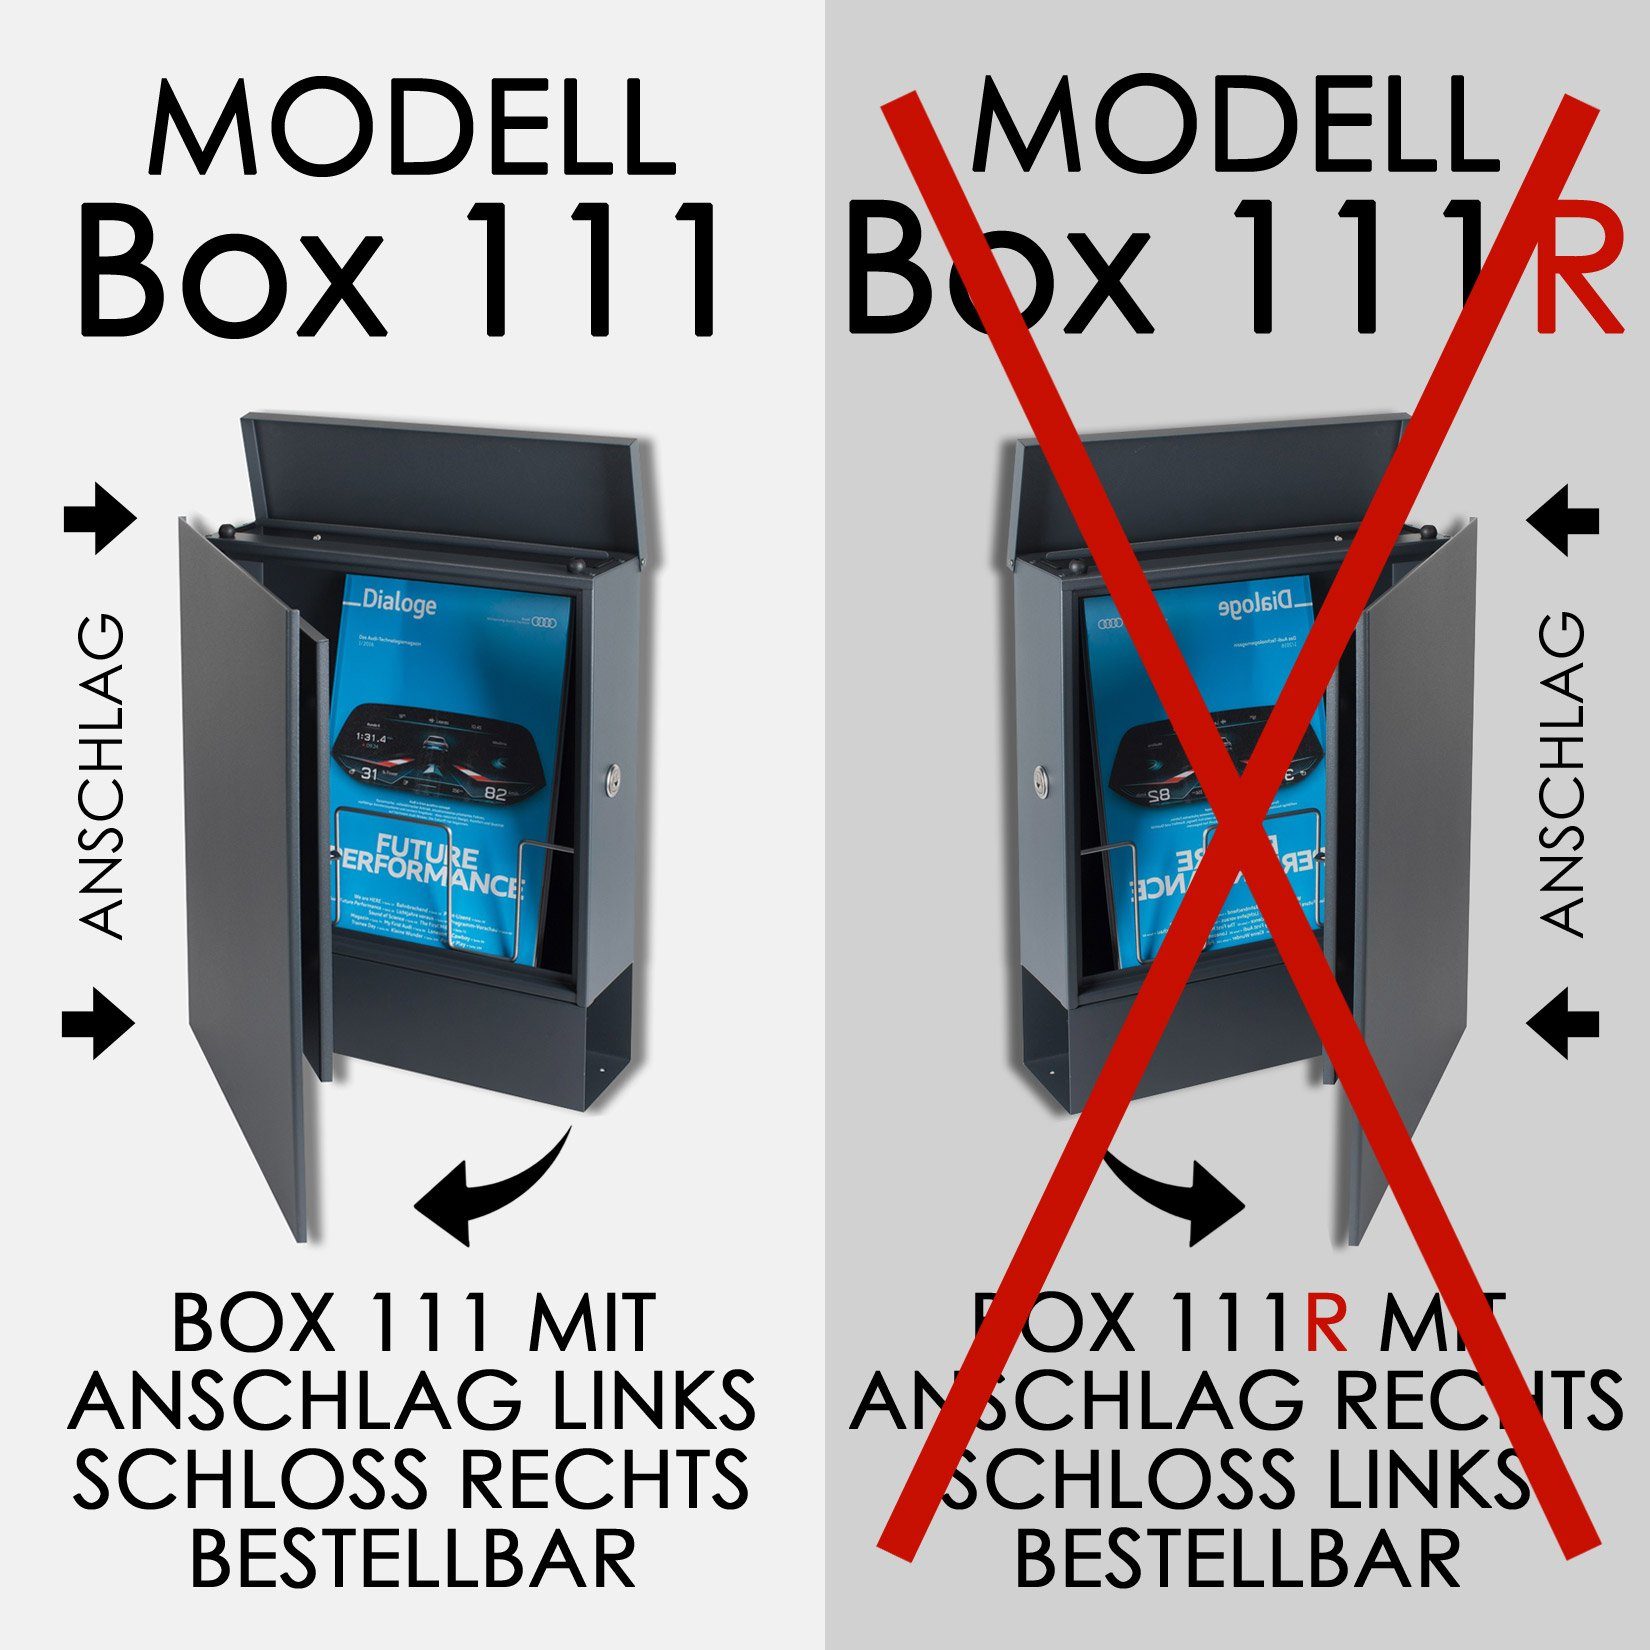 MOCAVI bestellbar) (RAL 111 1 mit integriert; Zeitungsfach MOCAVI nutzbar: Verschluss Box Vers VA Box 1 Vers Briefkasten Box für anthrazit-grau 7016, beidseitig Wetterseite, passender Design-Briefkasten (zusätzlich 7016),